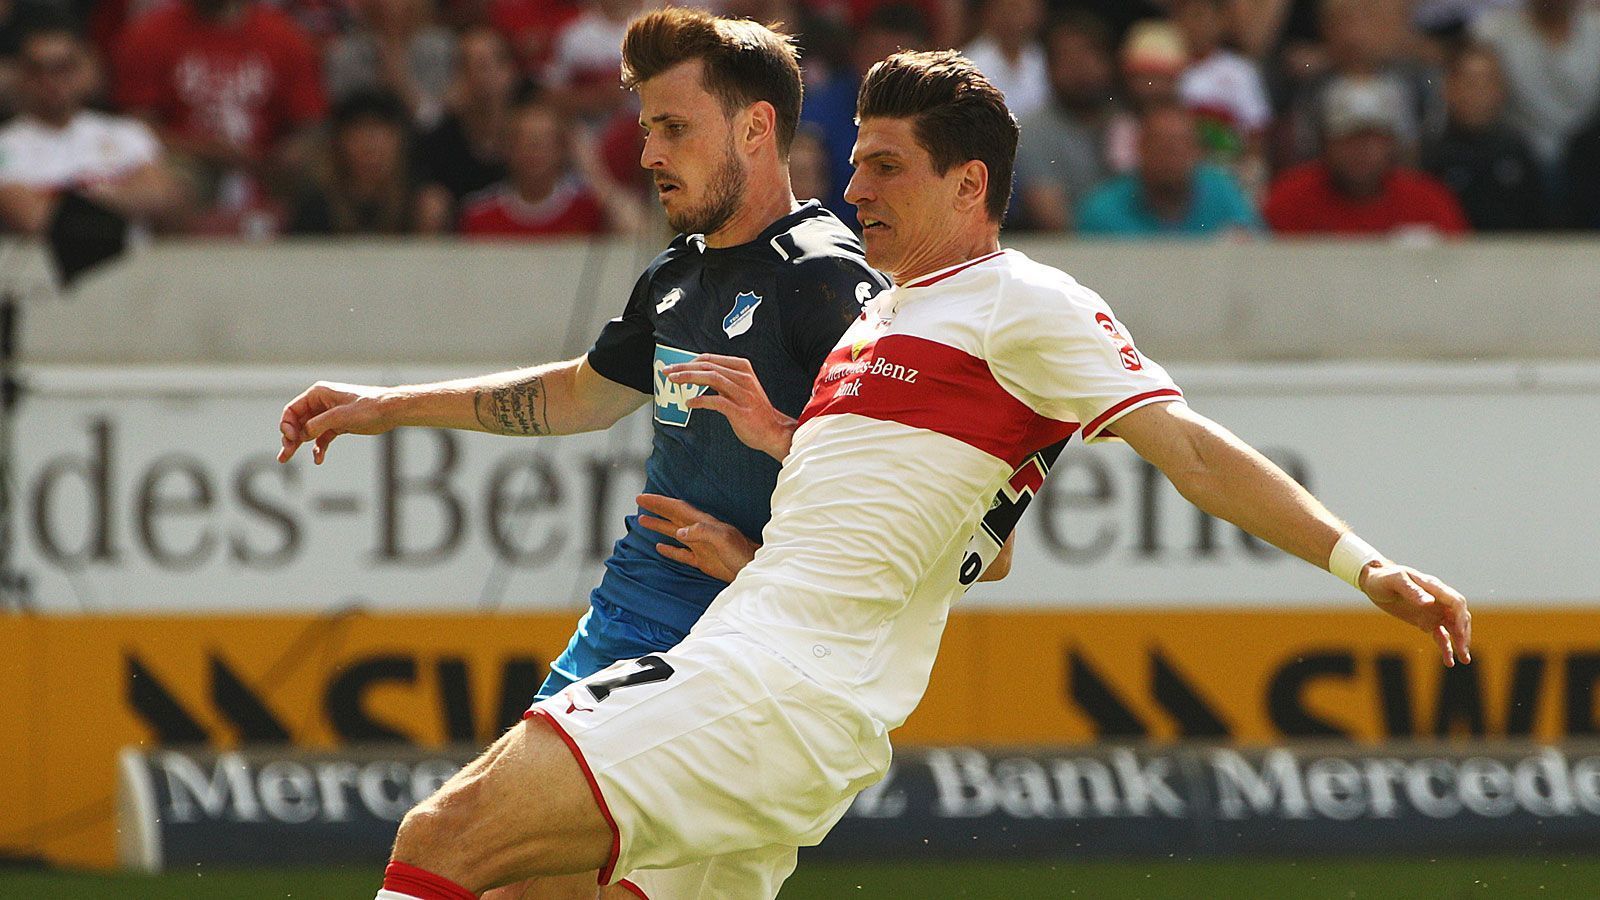 
                <strong>Mario Gomez (VfB Stuttgart)</strong><br>
                Der VfB Stuttgart hat einen klassischen Fehlstart in die Saison hingelegt. Nach zwei Spieltagen liegen die Schwaben mit null Punkten und ebenso wenig Toren auf dem letzten Tabellenplatz. Selbsterklärend wartet auch Mario Gomez auf seinen ersten Treffer in dieser Saison.
              